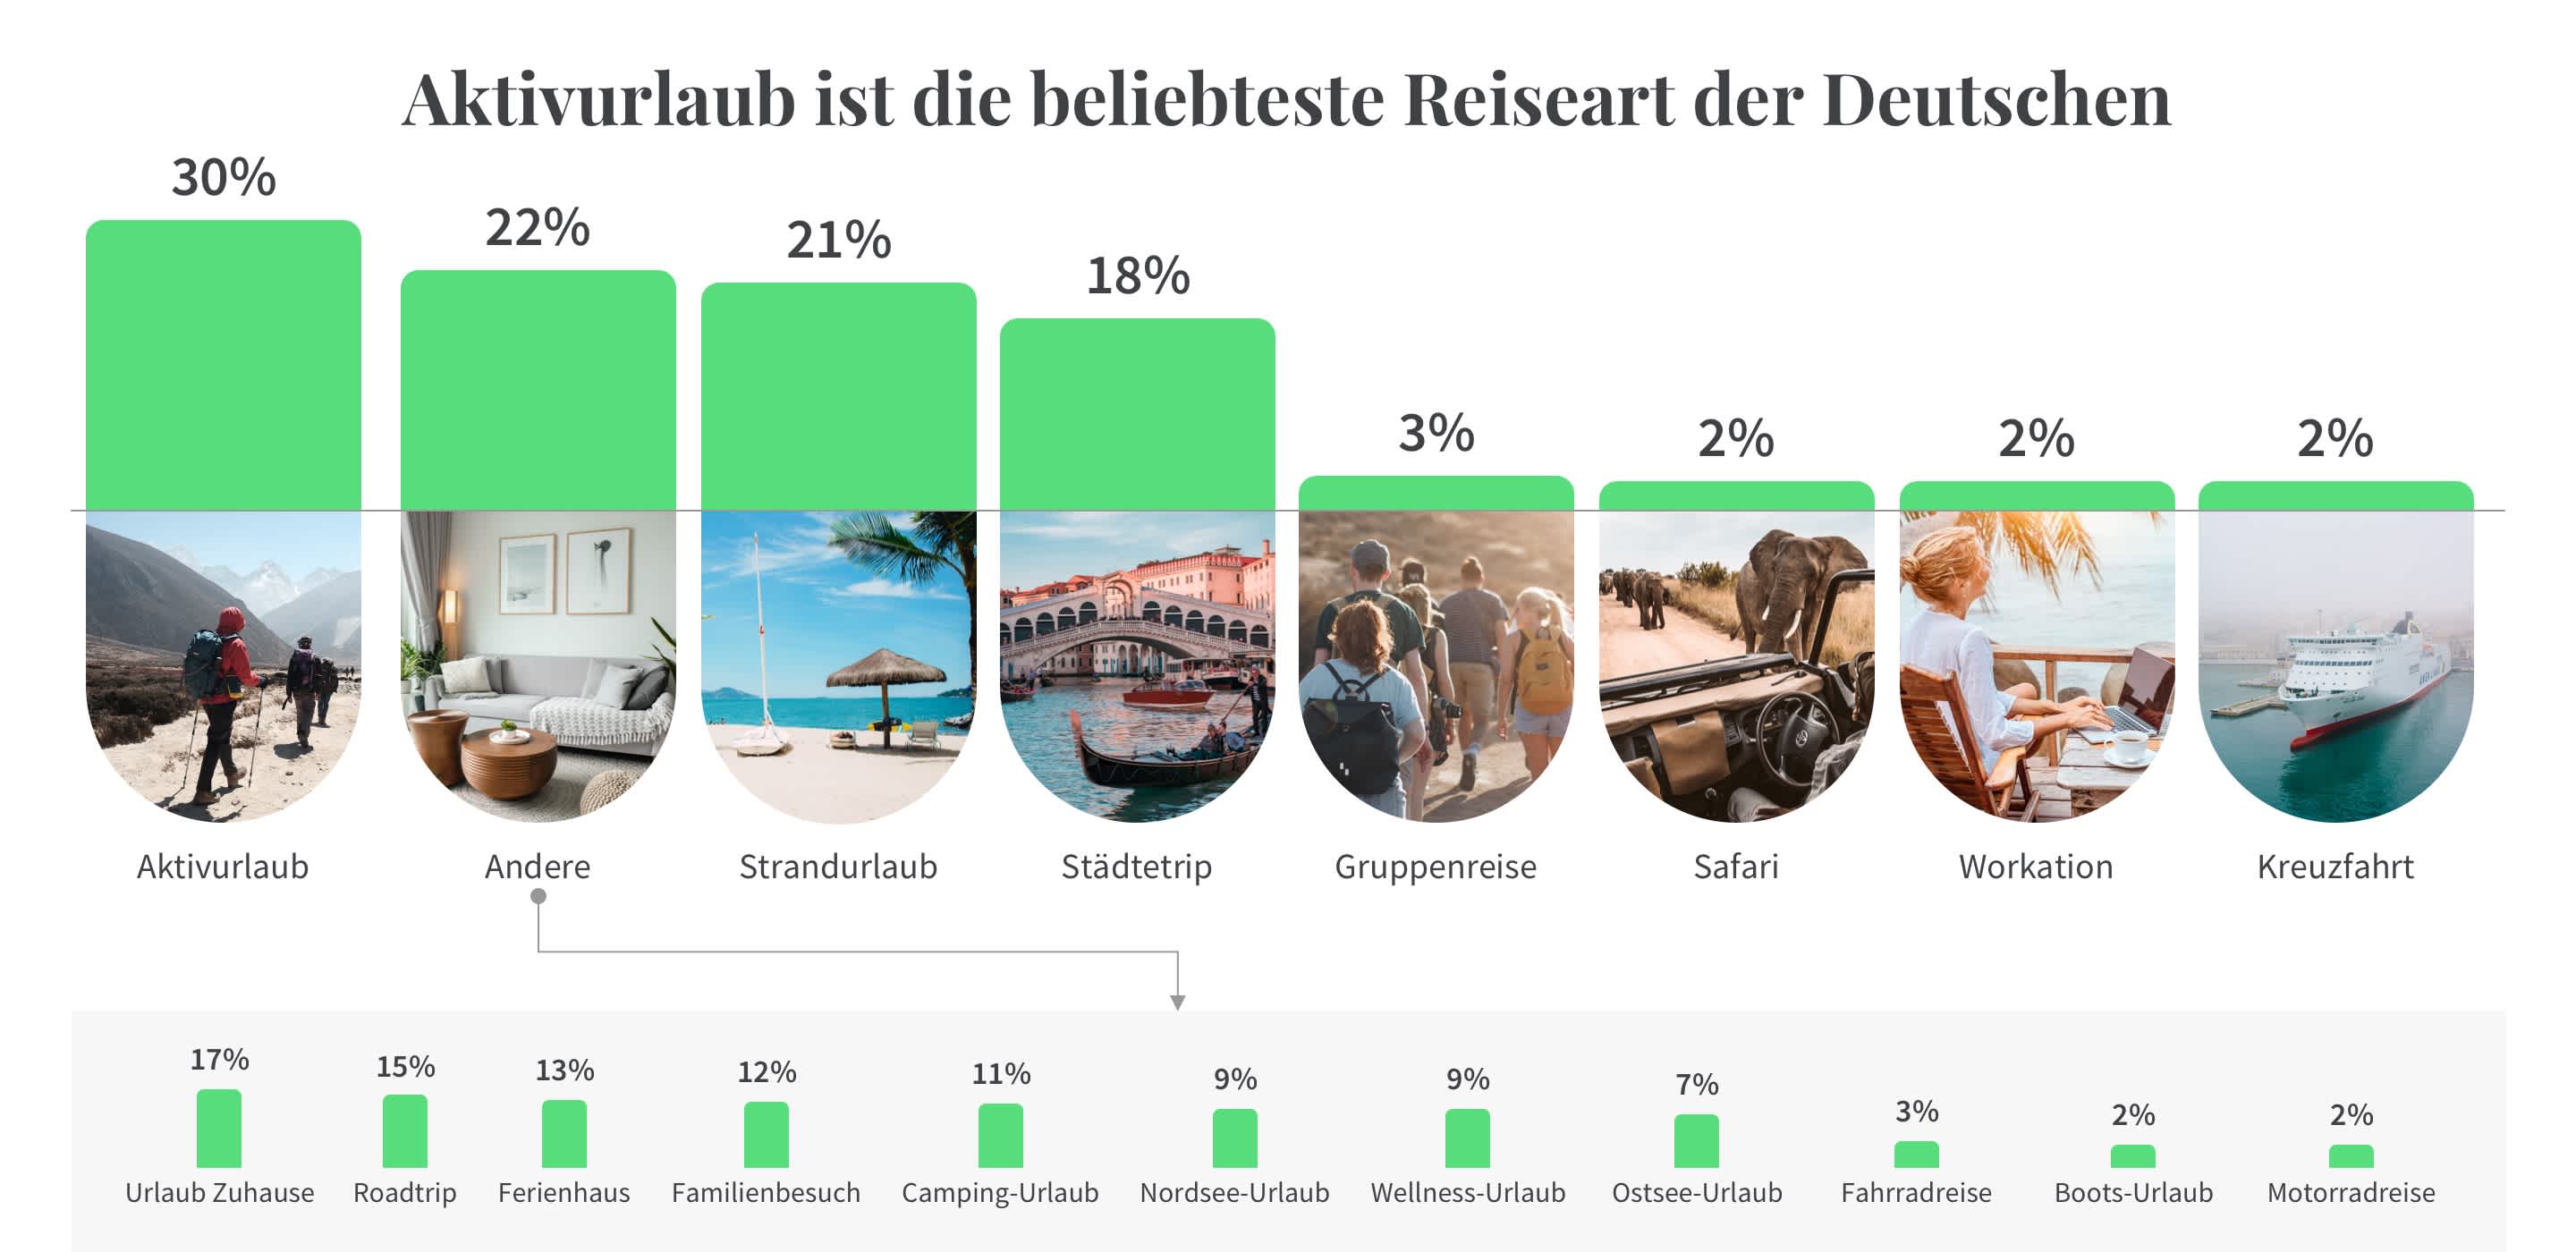 Aktivurlaub sind unter Deutschen besonders beliebt.